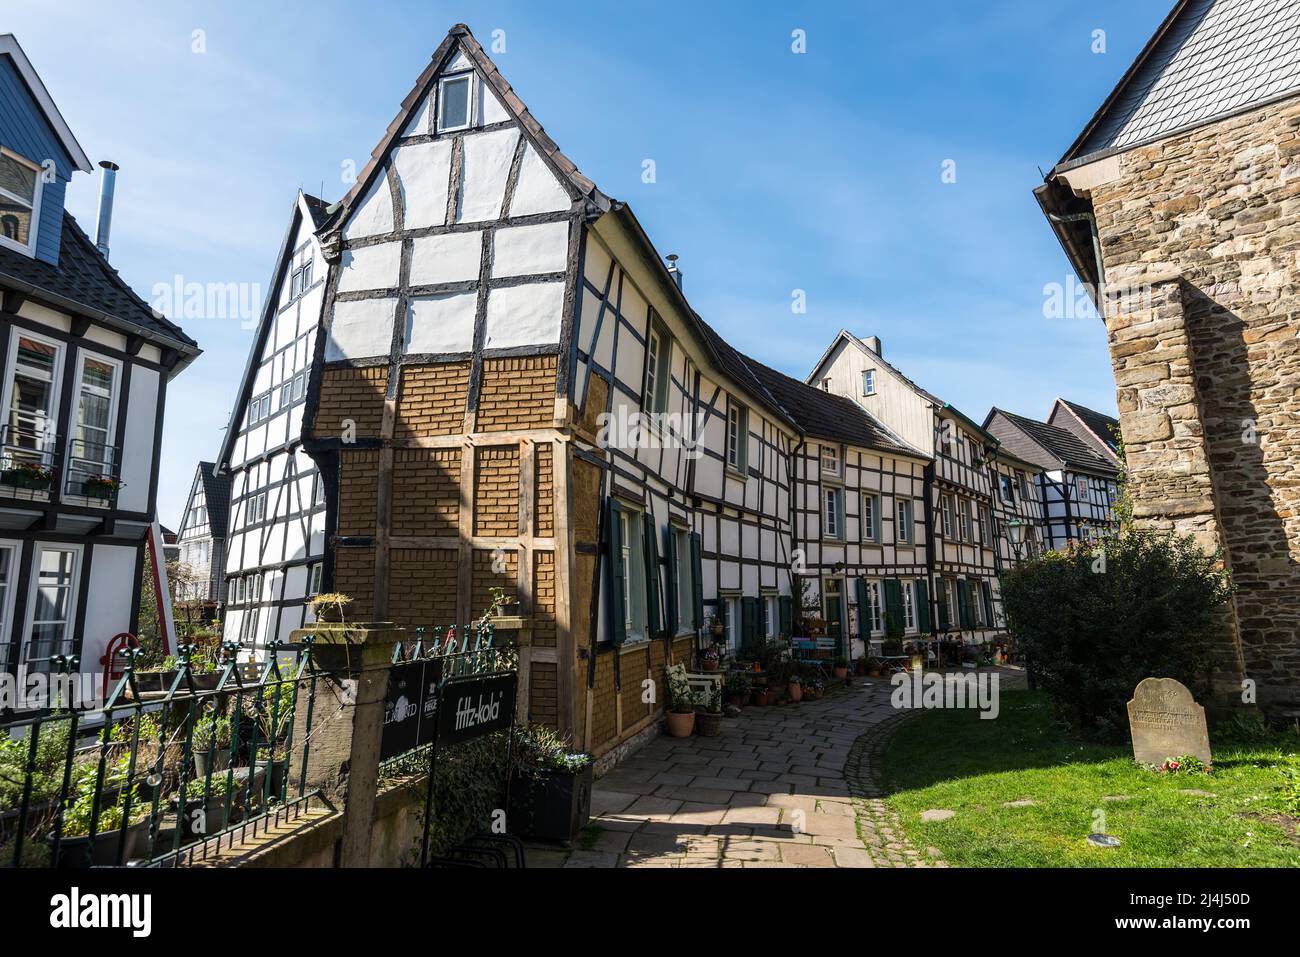 Hattingen, Alemania - 11 de abril de 2022: Arquitectura tradicional de casas típicas alemanas de entramado de madera en Hattingen, Renania del Norte-Westfalia. Espalda pequeña Foto de stock